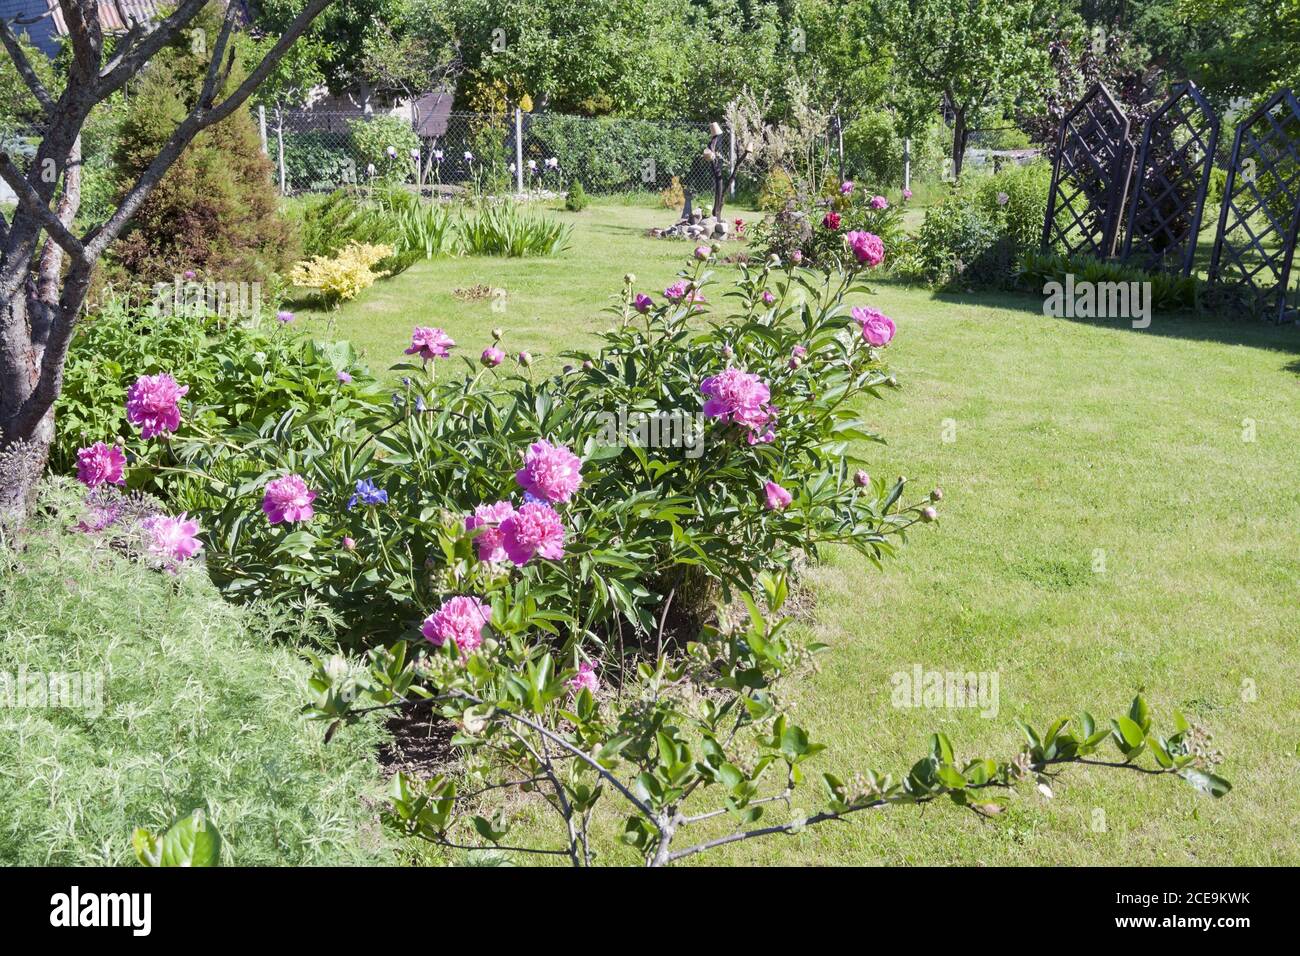 El arbusto de peonías rosadas crece en un jardín decorativo Foto de stock